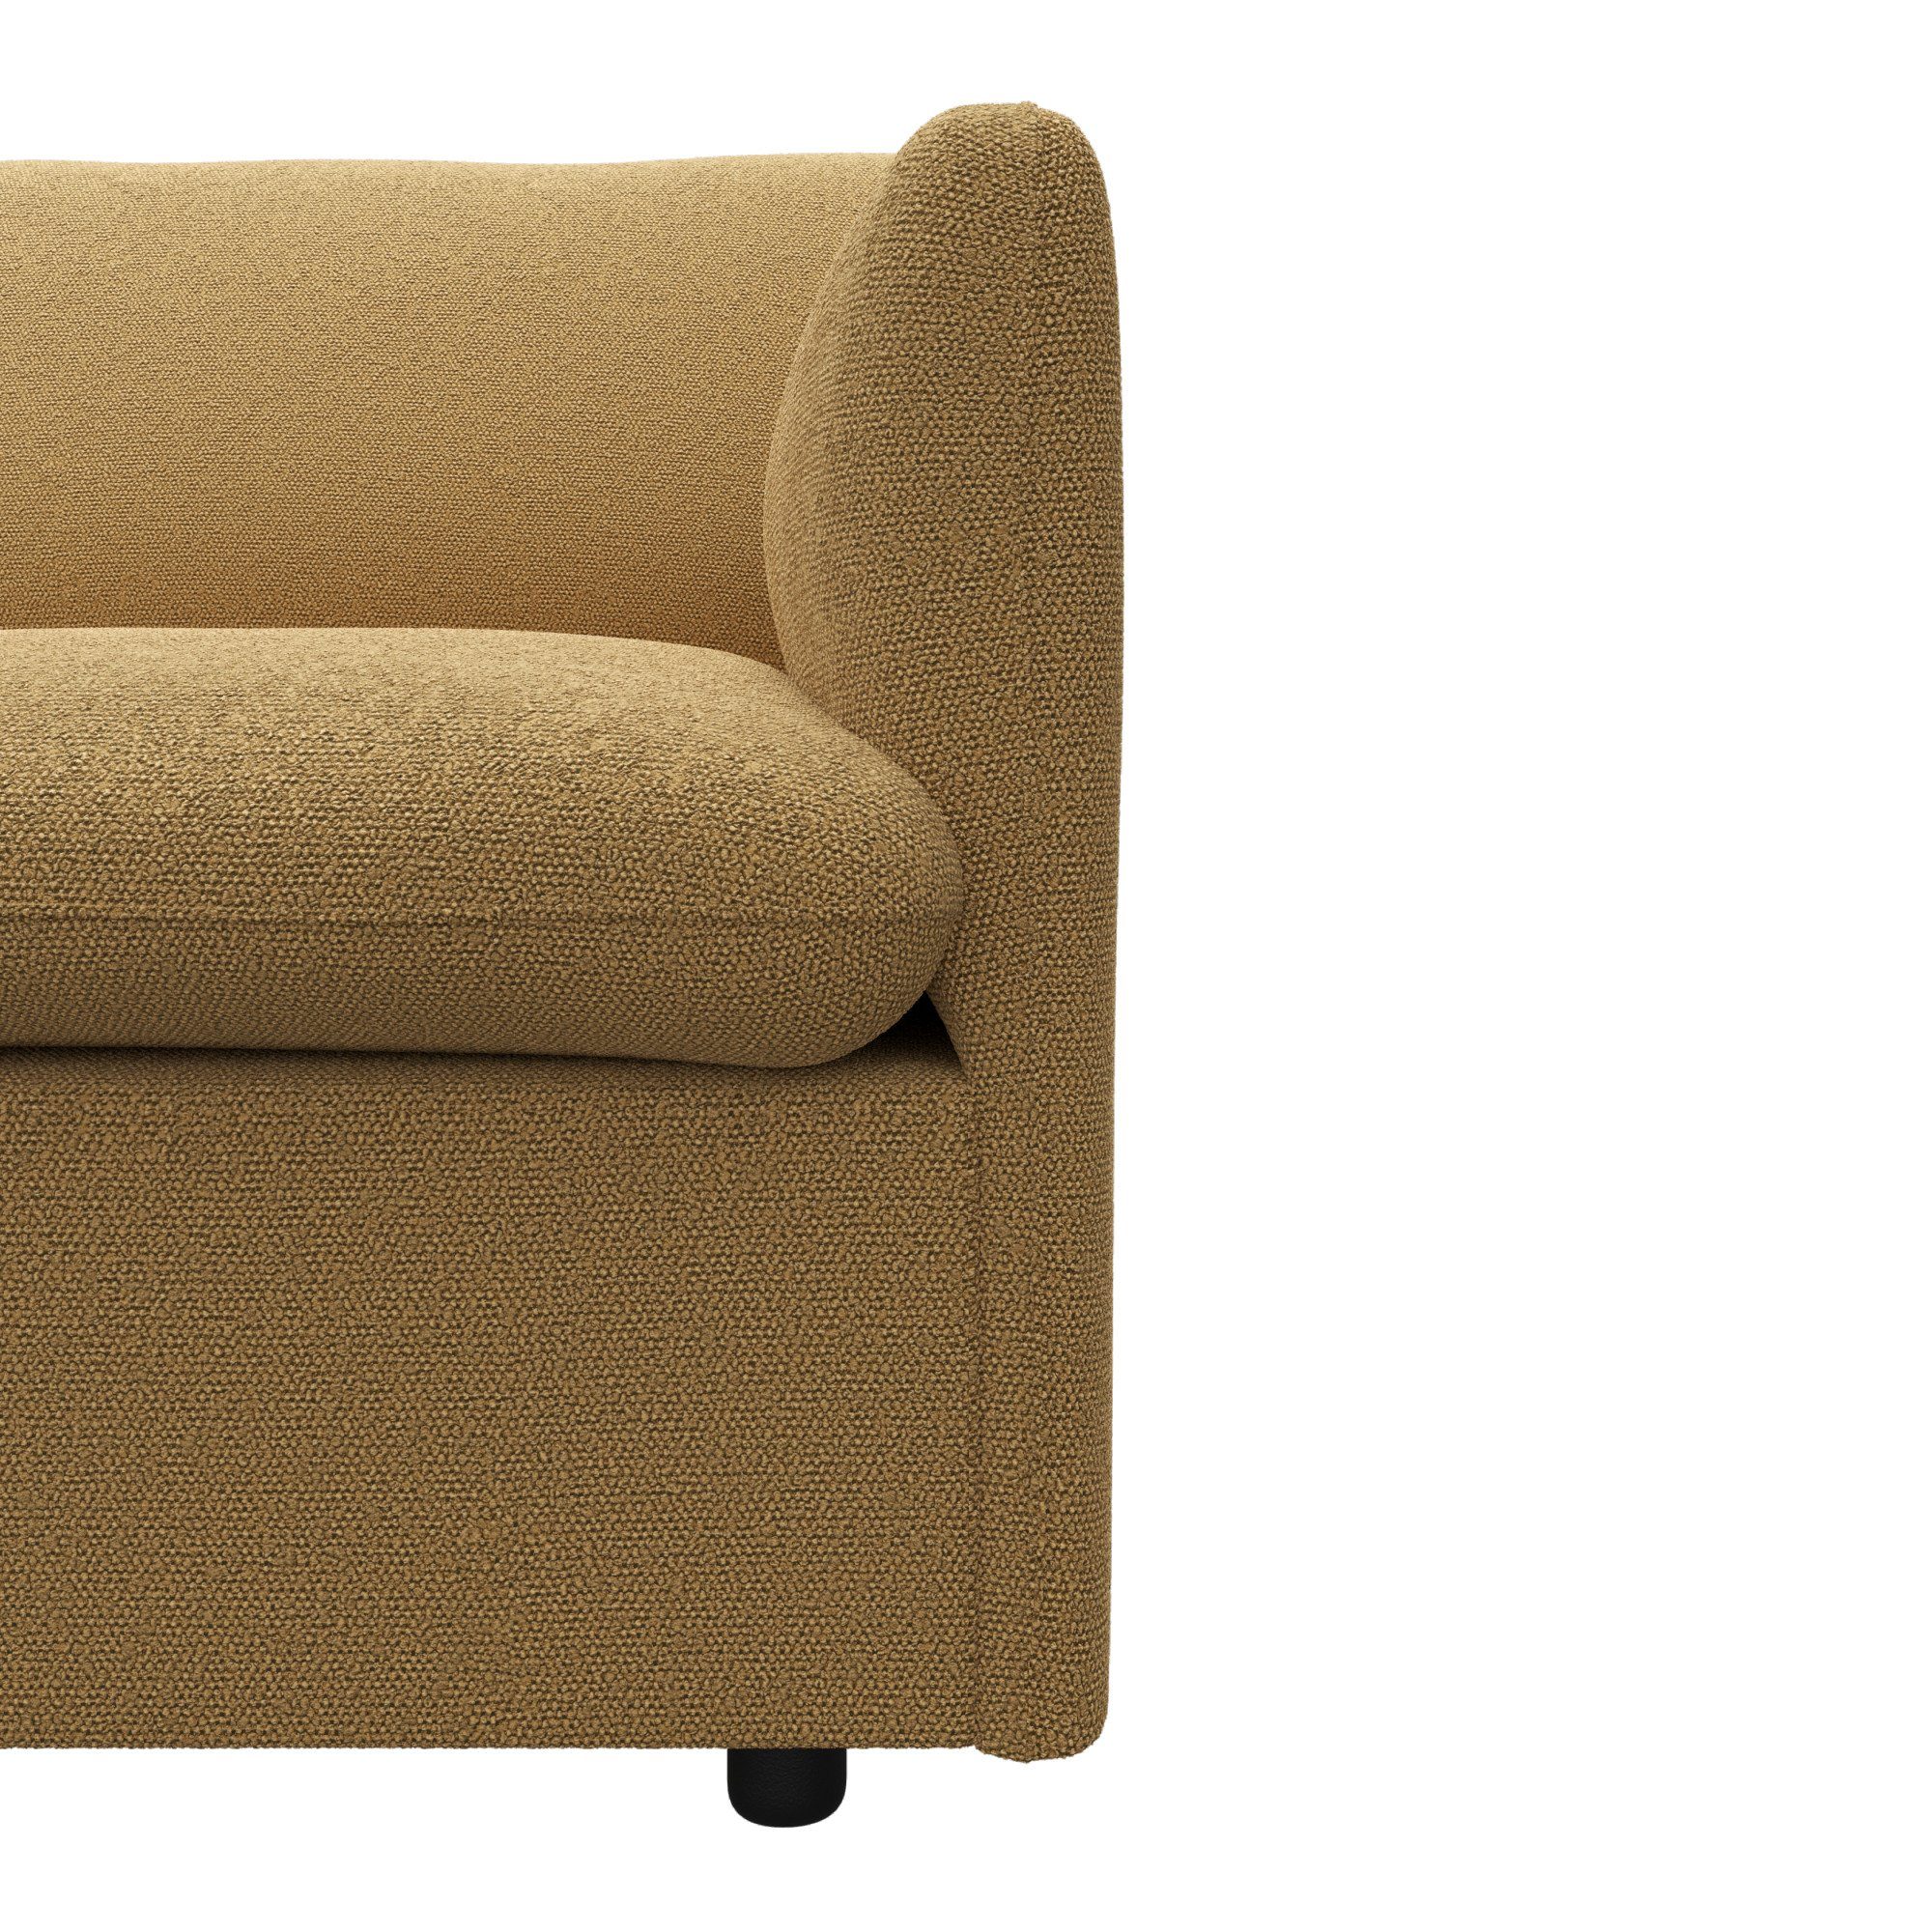 Sofakombinationen Form, attraktiver Imatra, verfügbar 2-Sitzer unterschiedliche in andas